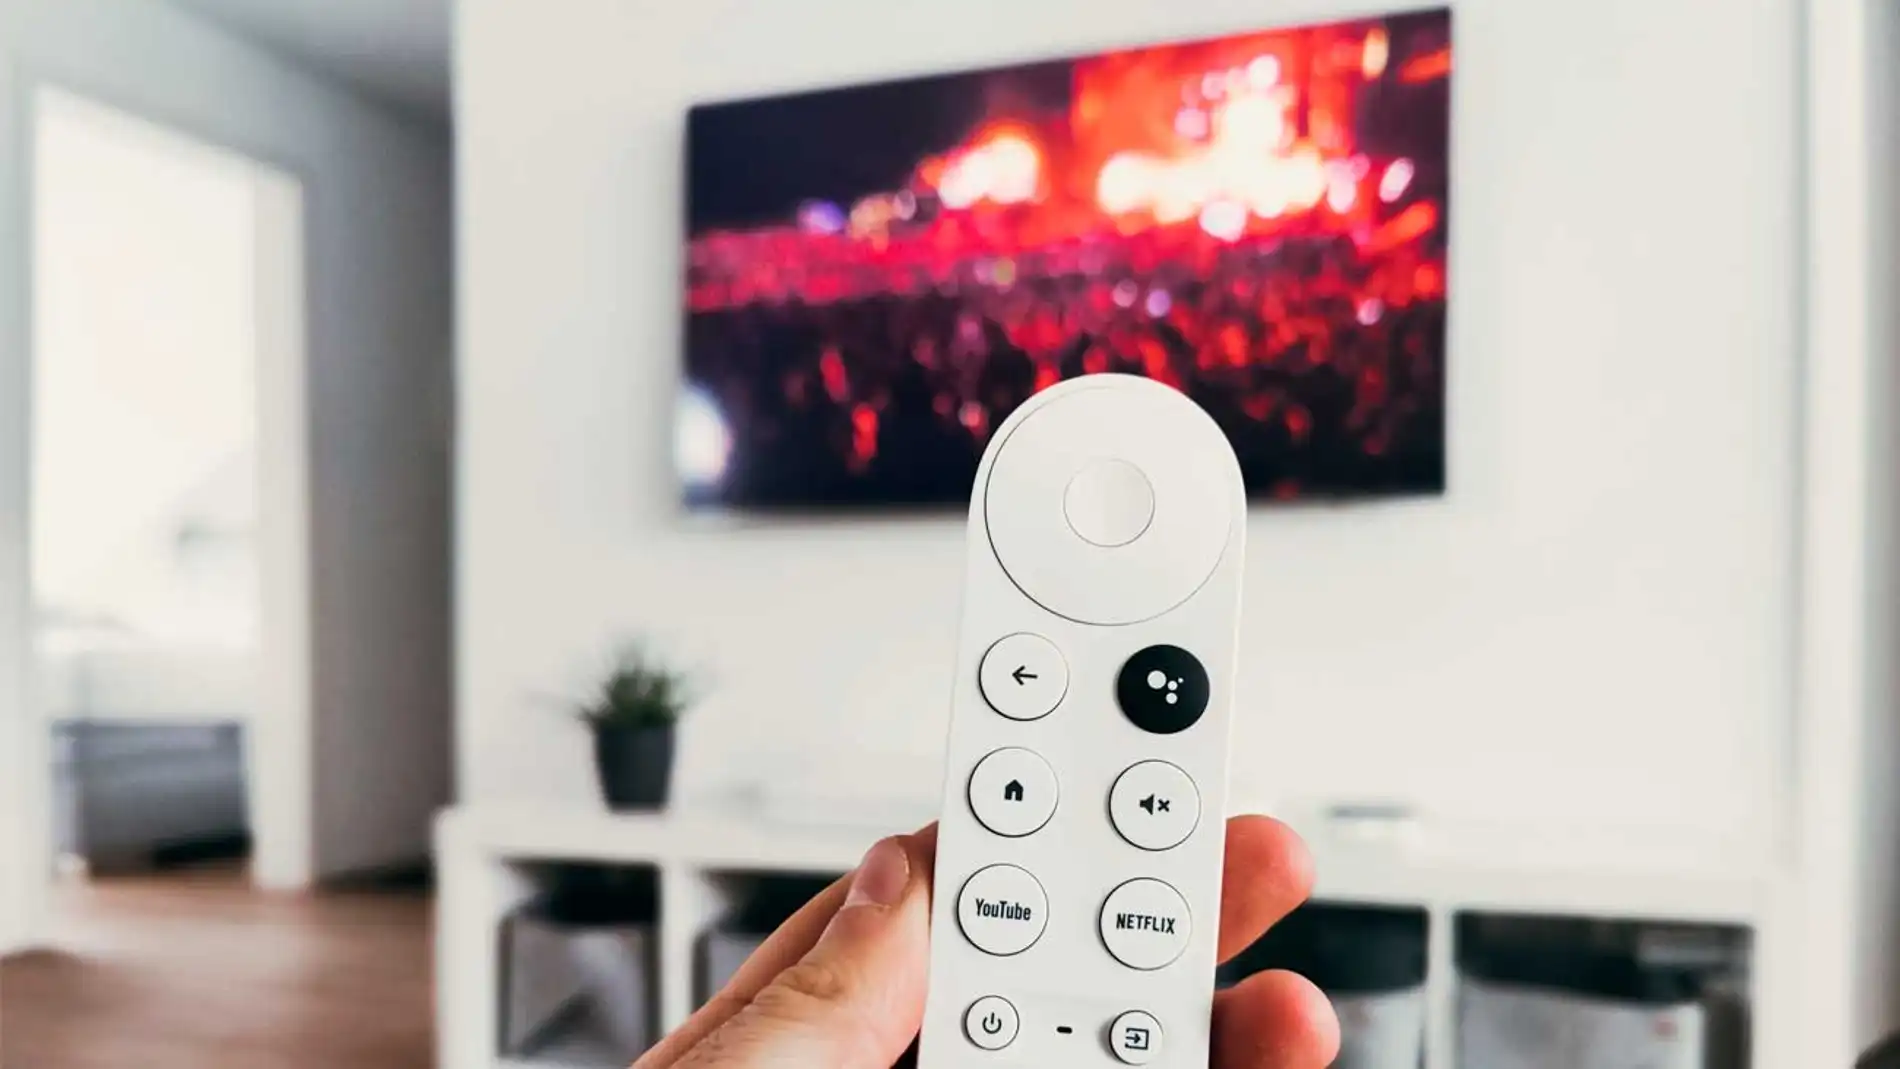 El nuevo Chromecast con Google TV y mando deja obsoletas las Smart TVs